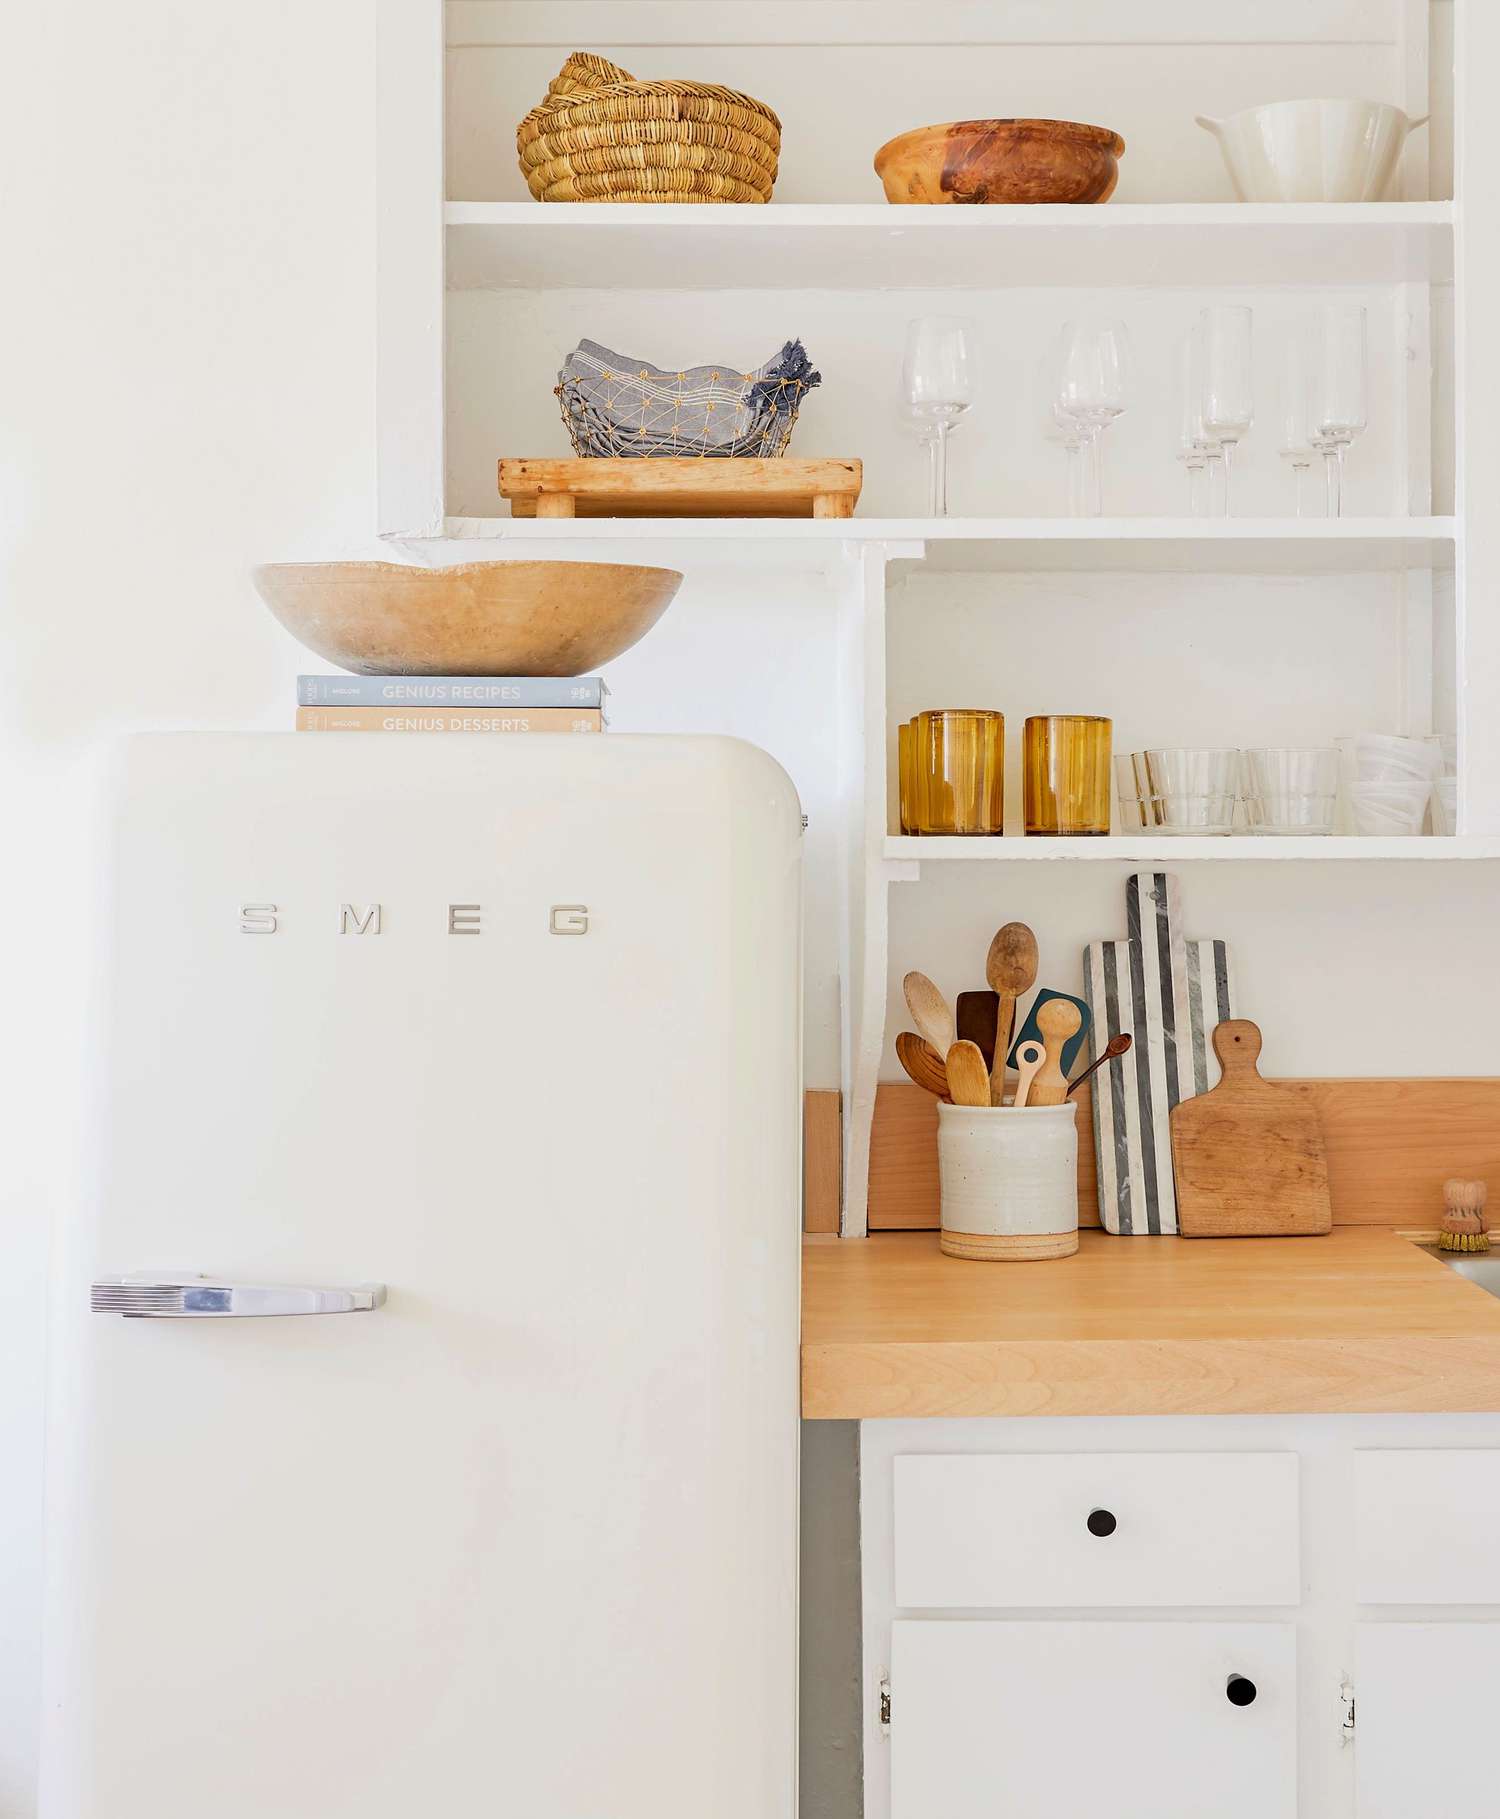 cozinha moderna branca com geladeira retrô, livros de receitas e tigela em cima da geladeira